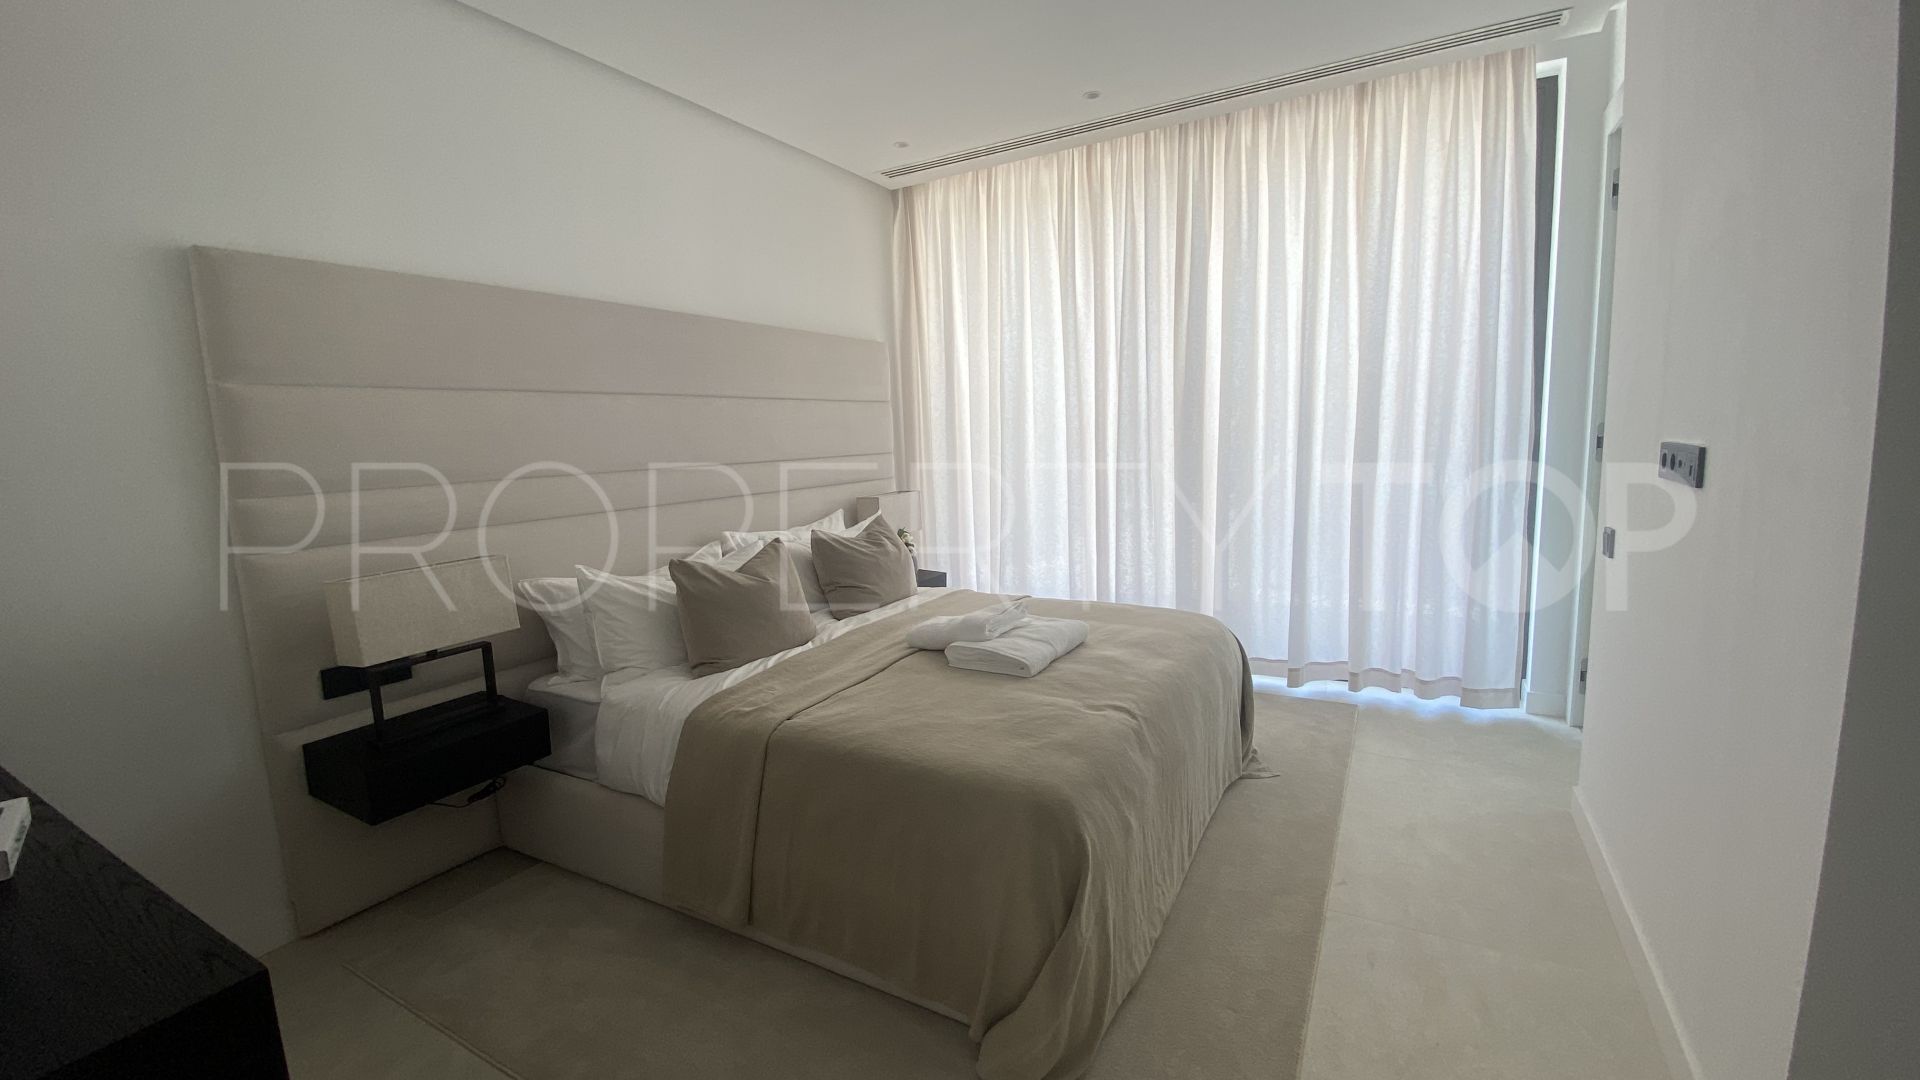 For sale villa with 6 bedrooms in Altos del Paraiso